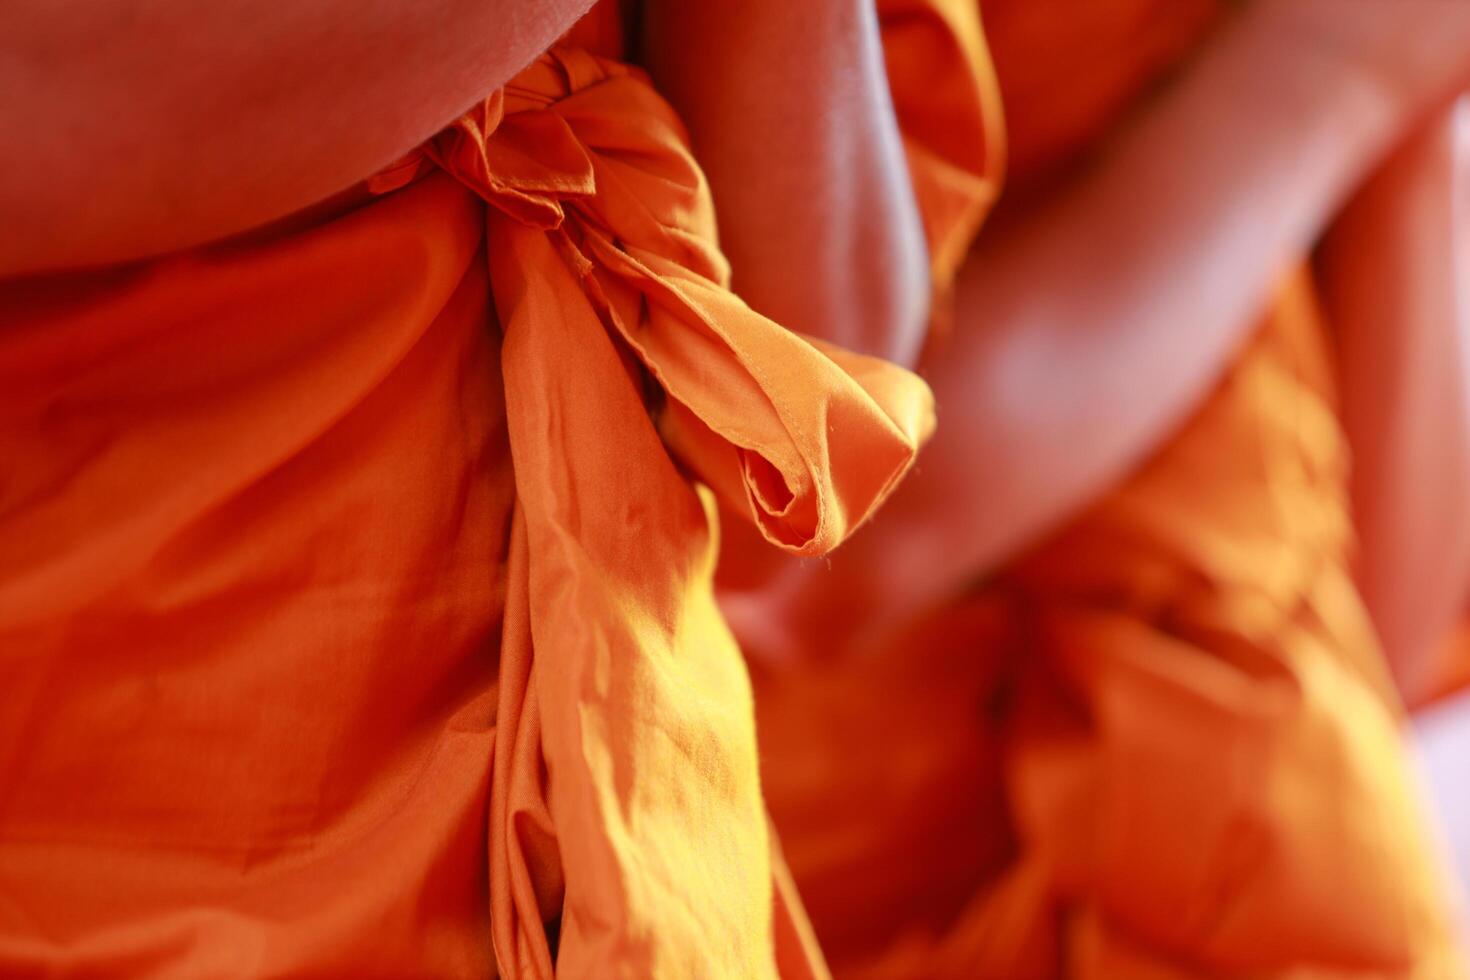 monniken zijn het uitvoeren van boeddhistisch rituelen naar bidden voor de zielen van de overleden naar Gaan naar hemel en vind geluk na dood. de concept van boeddhistisch rituelen naar bidden voor de geesten van de overleden. foto